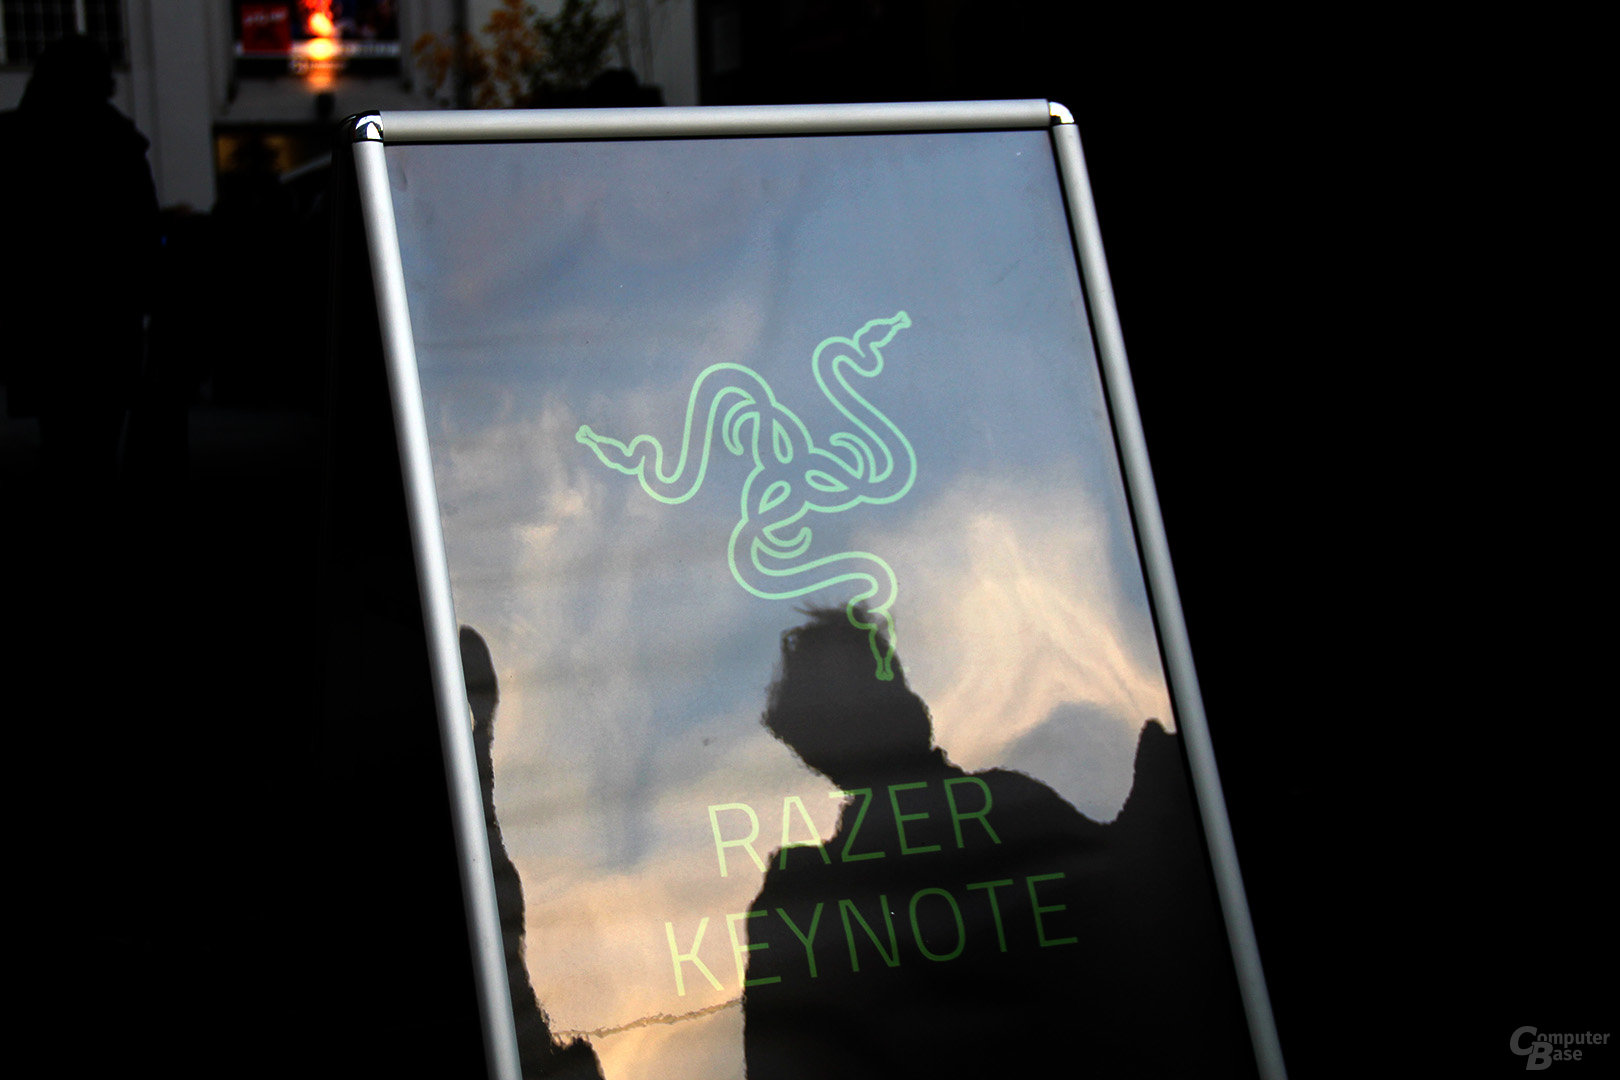 Razer Keynote in Berlin